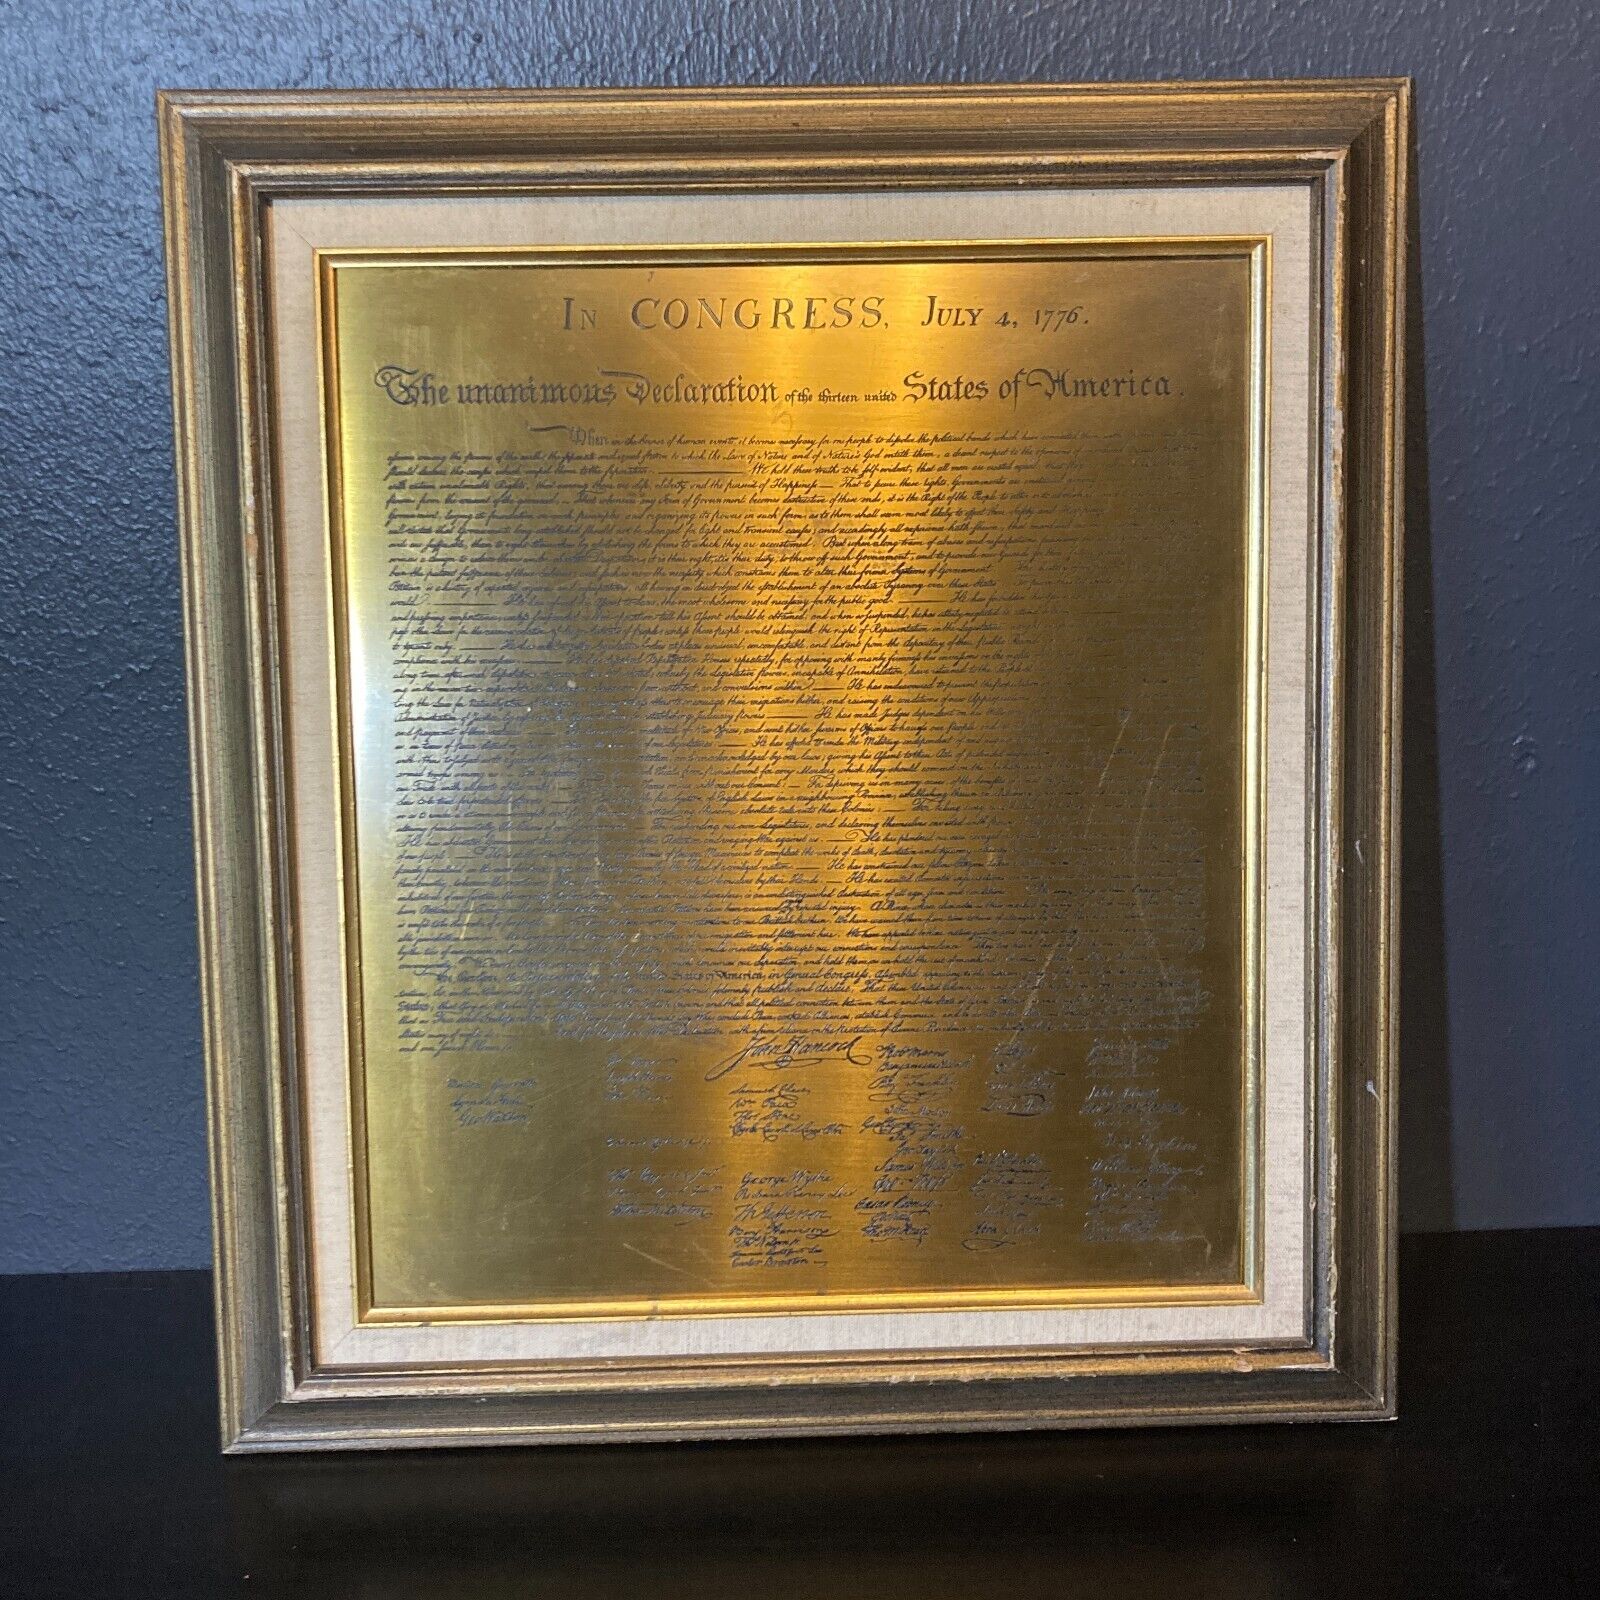 Vintage Declaration of Independence Engraved Brass Plaque Framed 17x19in Display